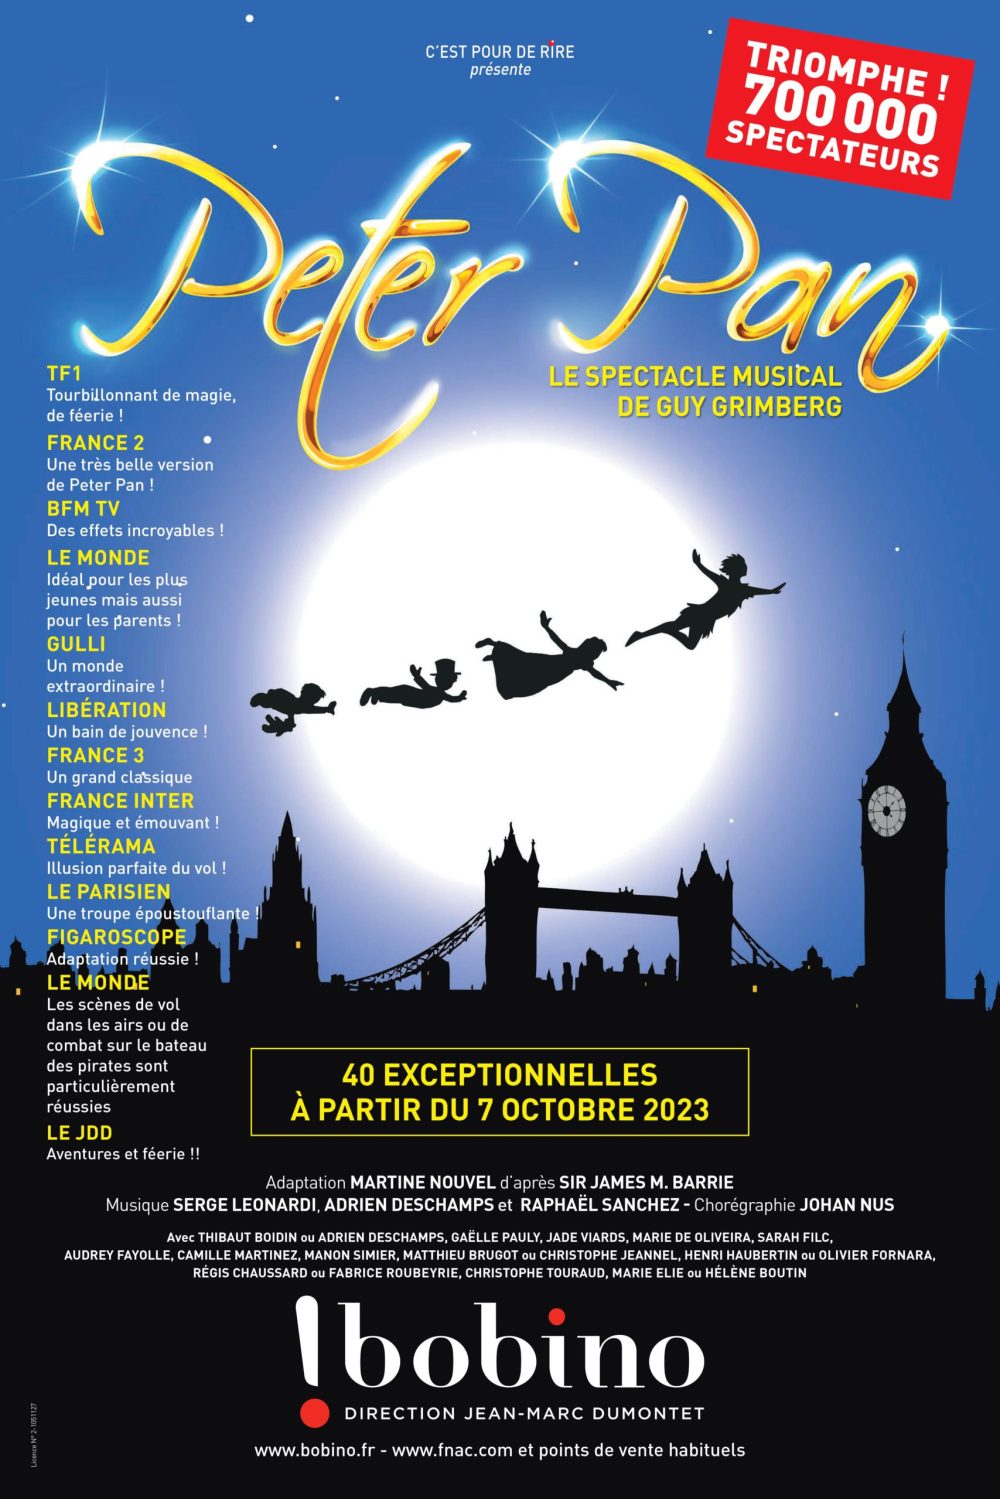 La comédie musicale « Peter Pan » de retour à Bobino